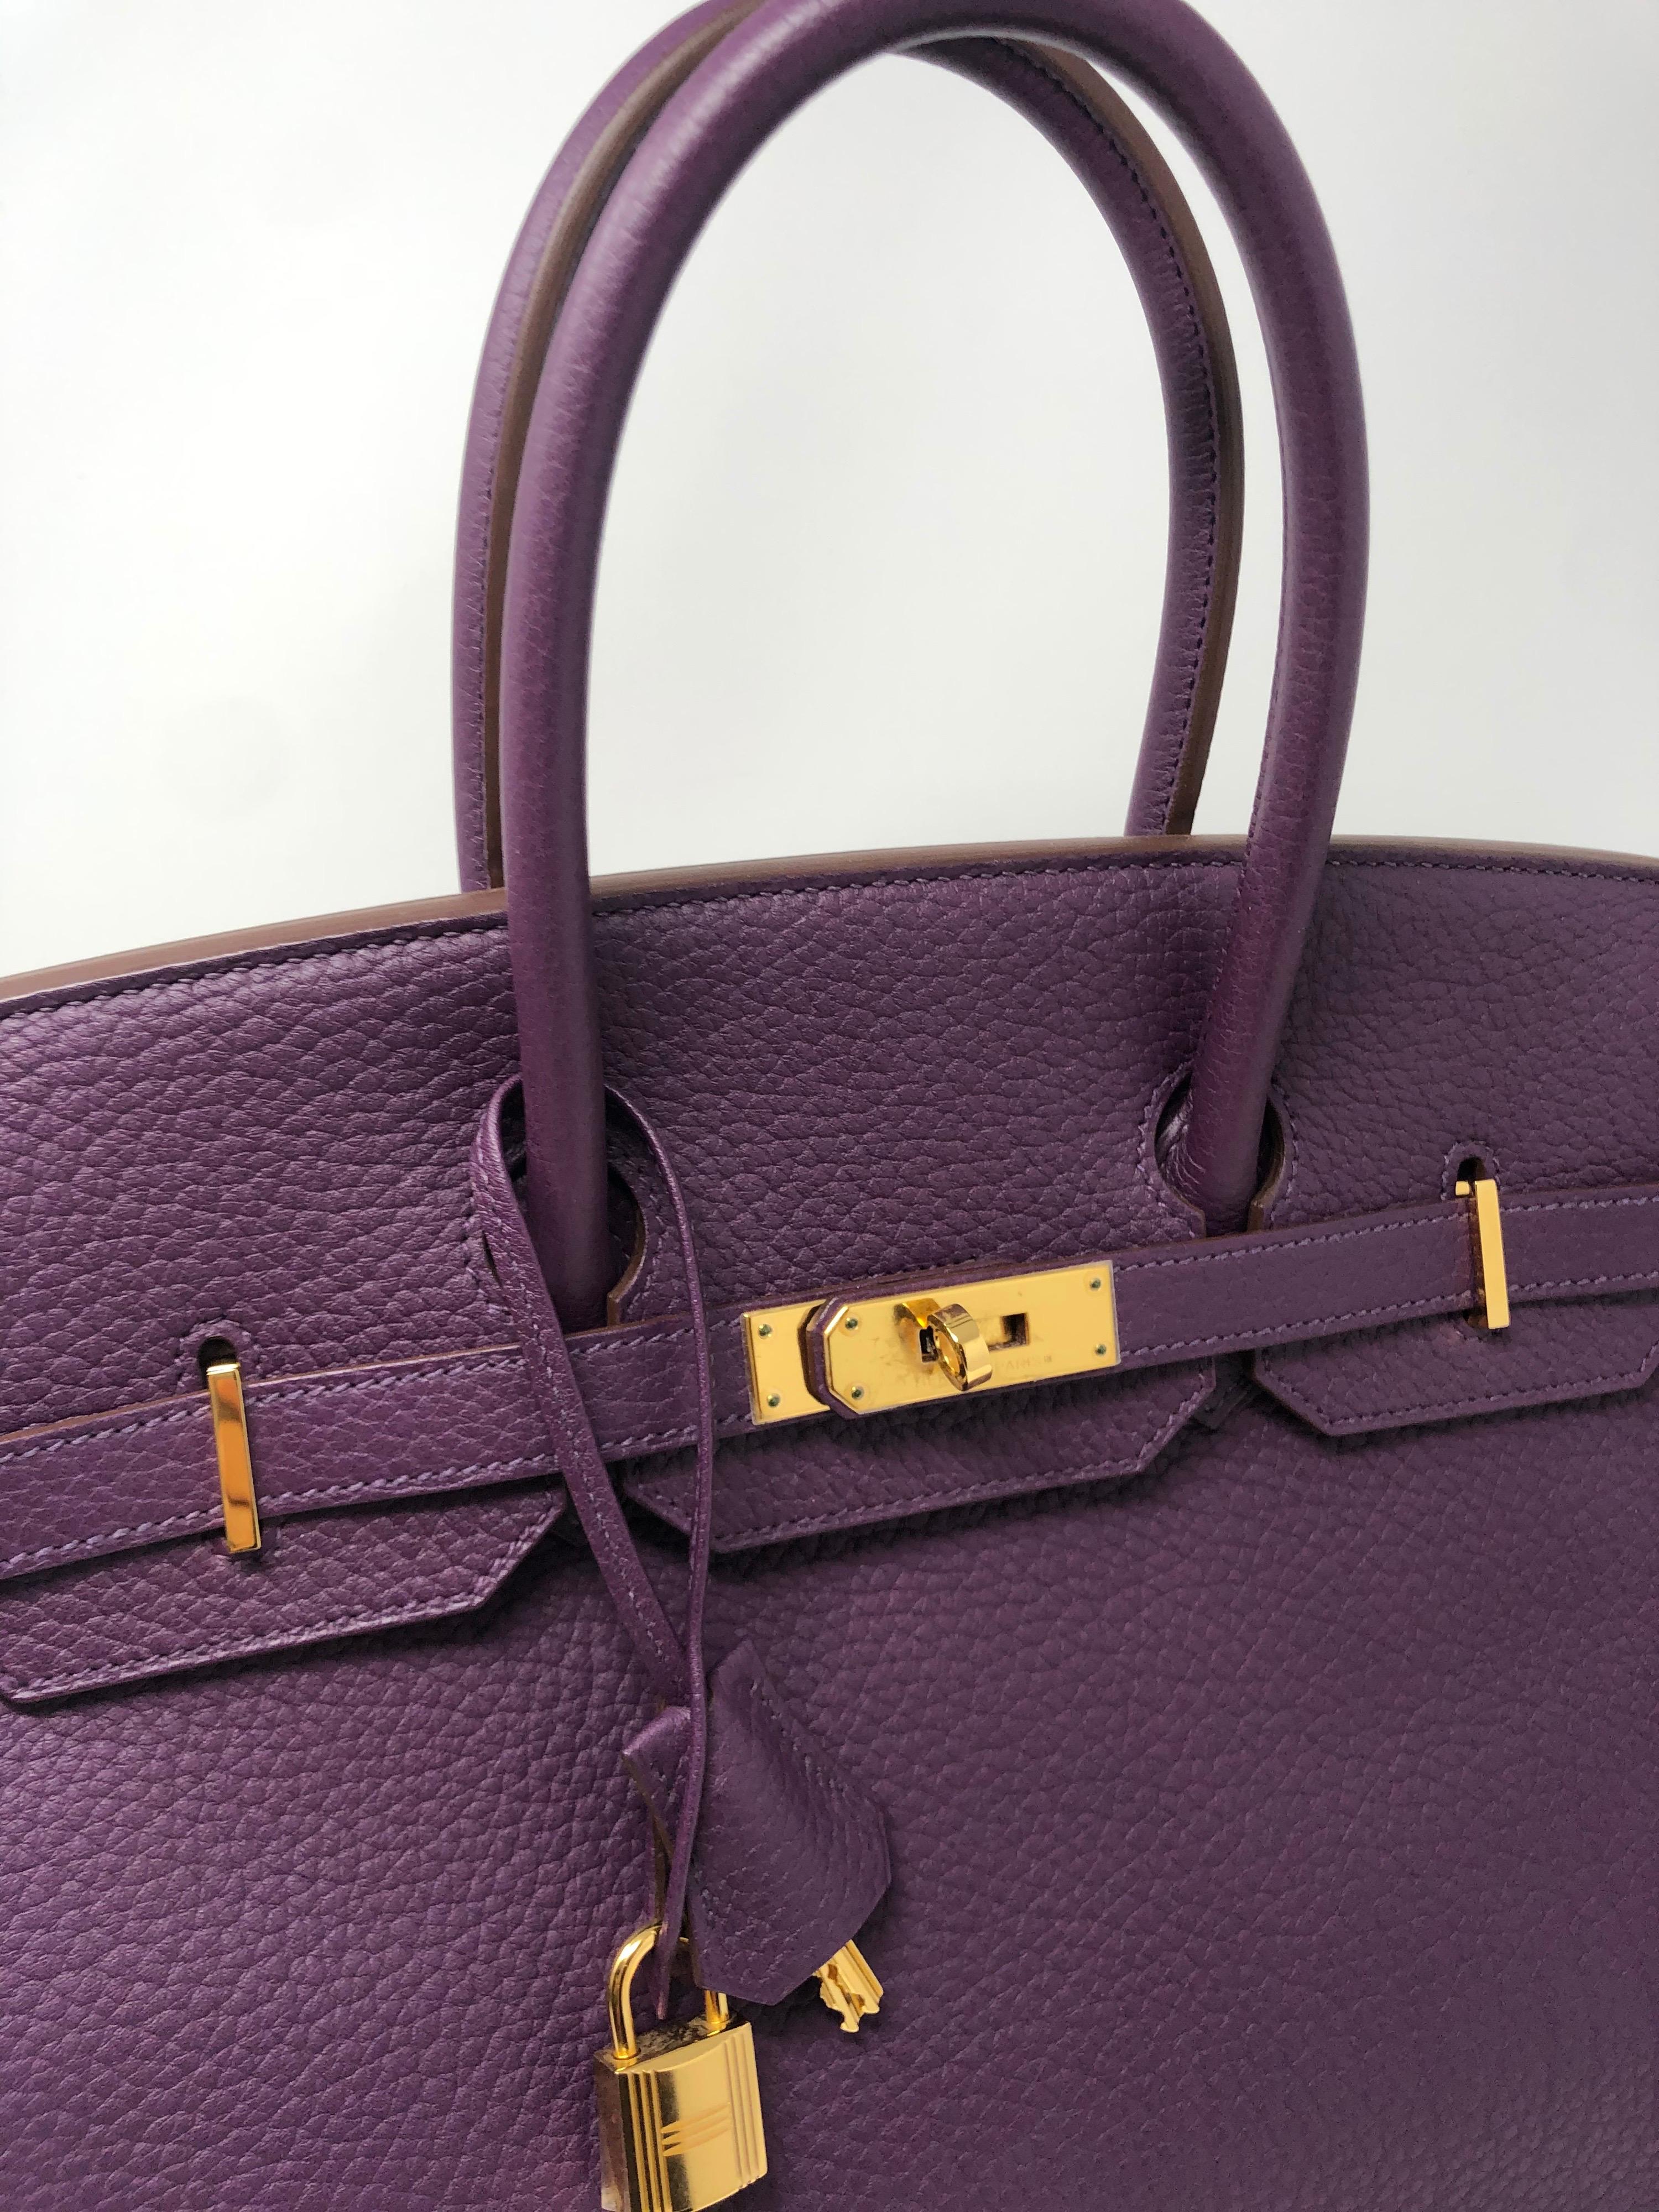 Women's or Men's Hermes Cassis Purple Birkin Bag